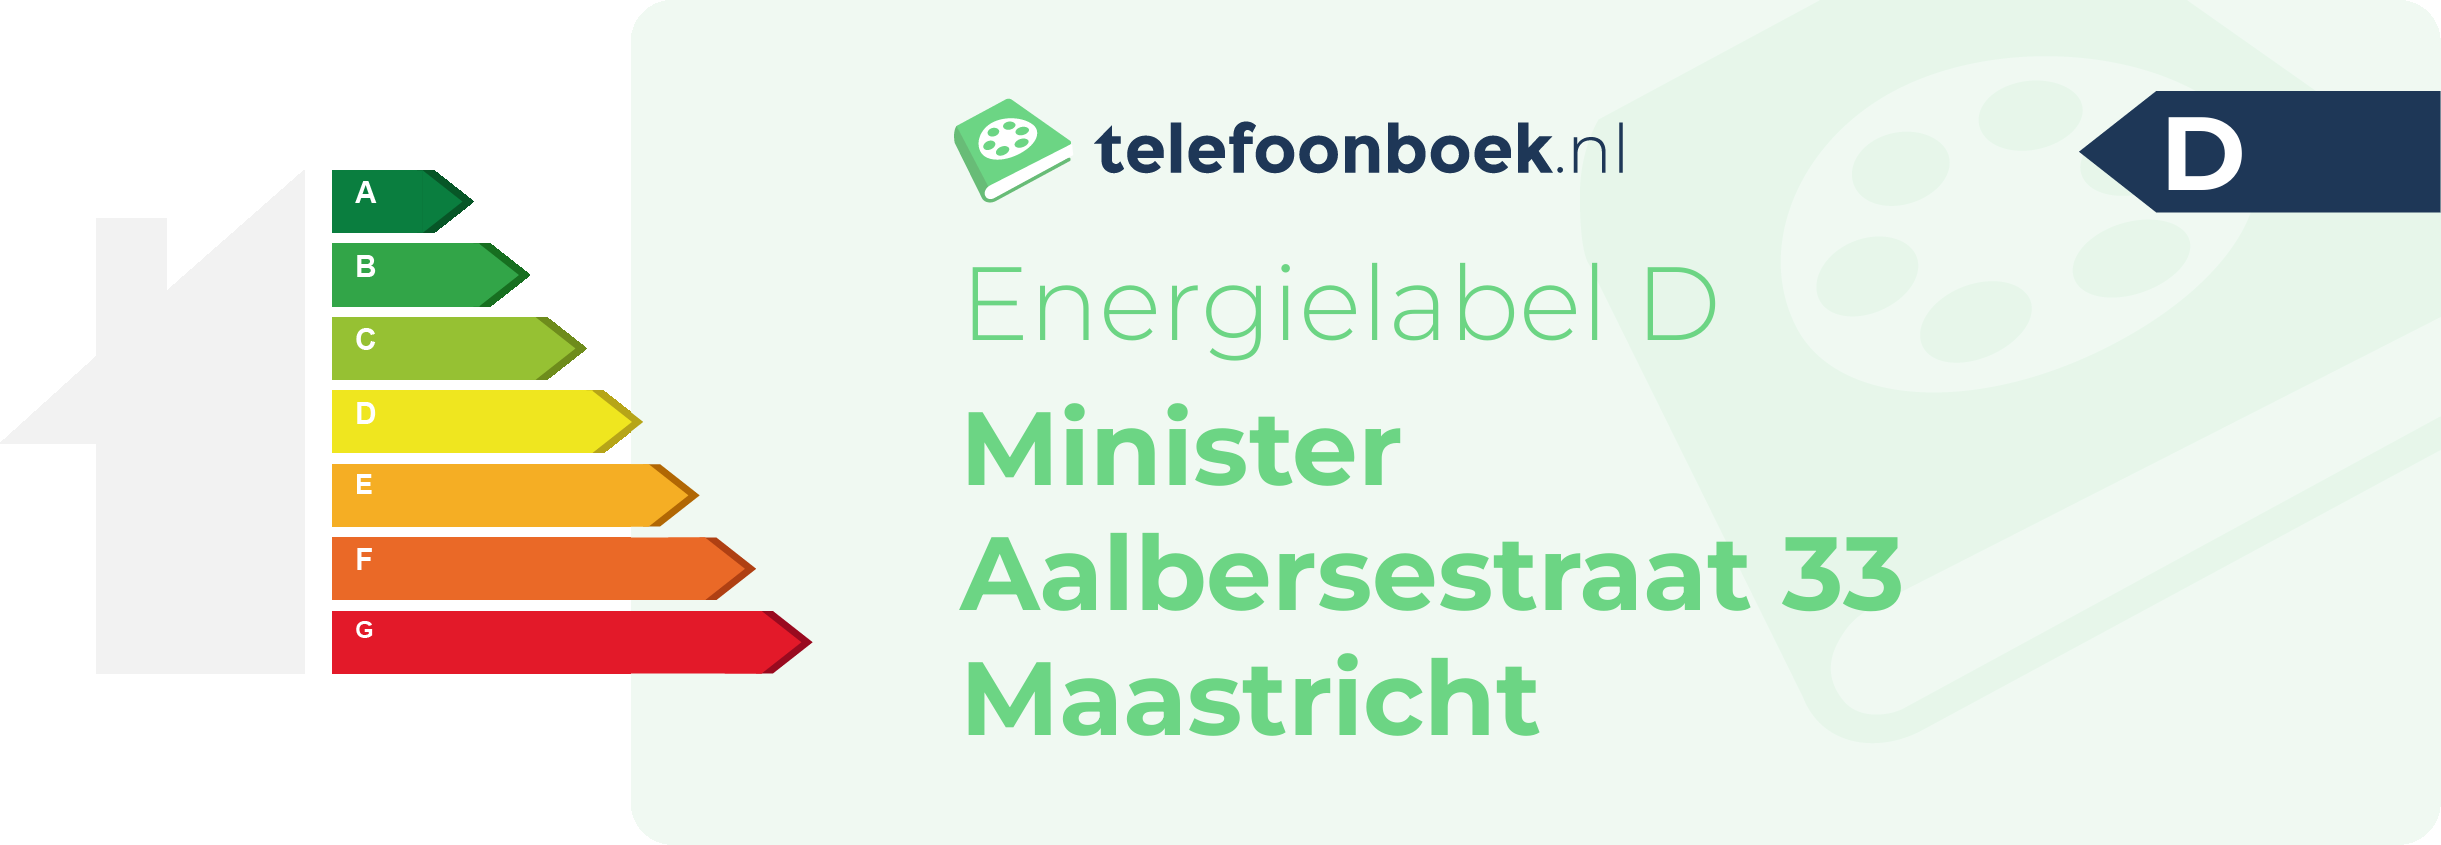 Energielabel Minister Aalbersestraat 33 Maastricht